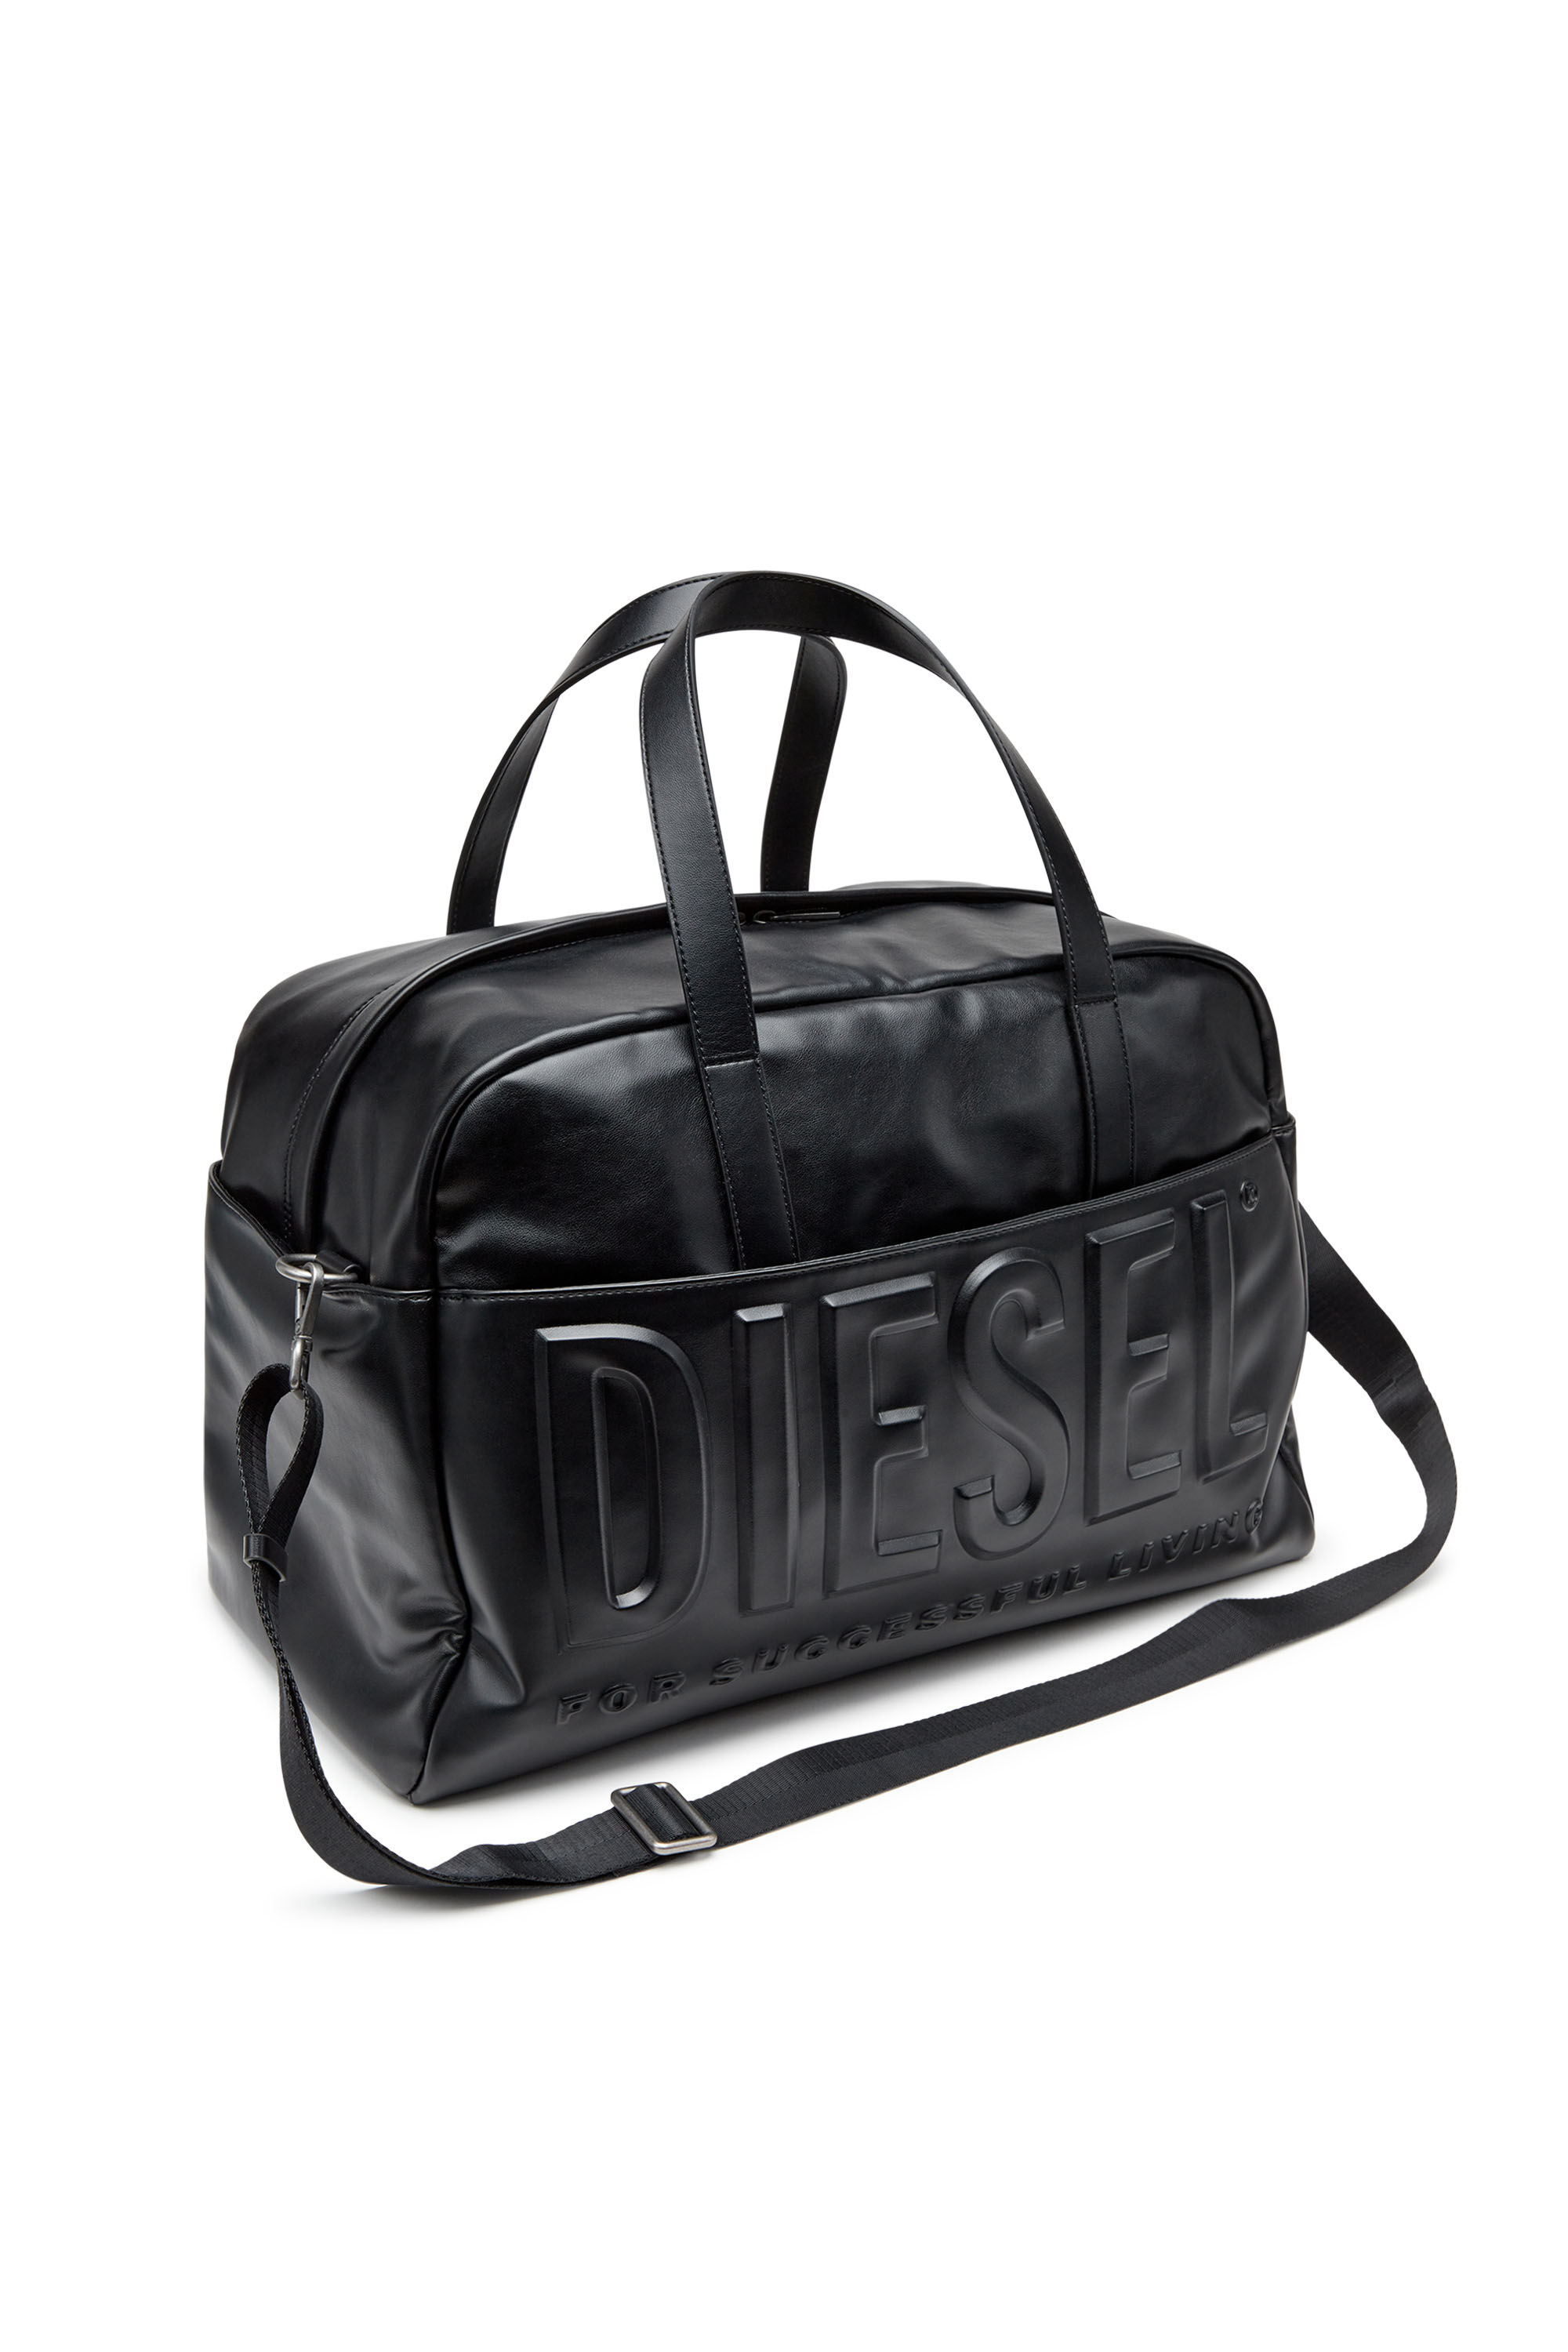 DSL 3D DUFFLE L X Dsl 3D L-Duffle bag with extreme 3D logo 